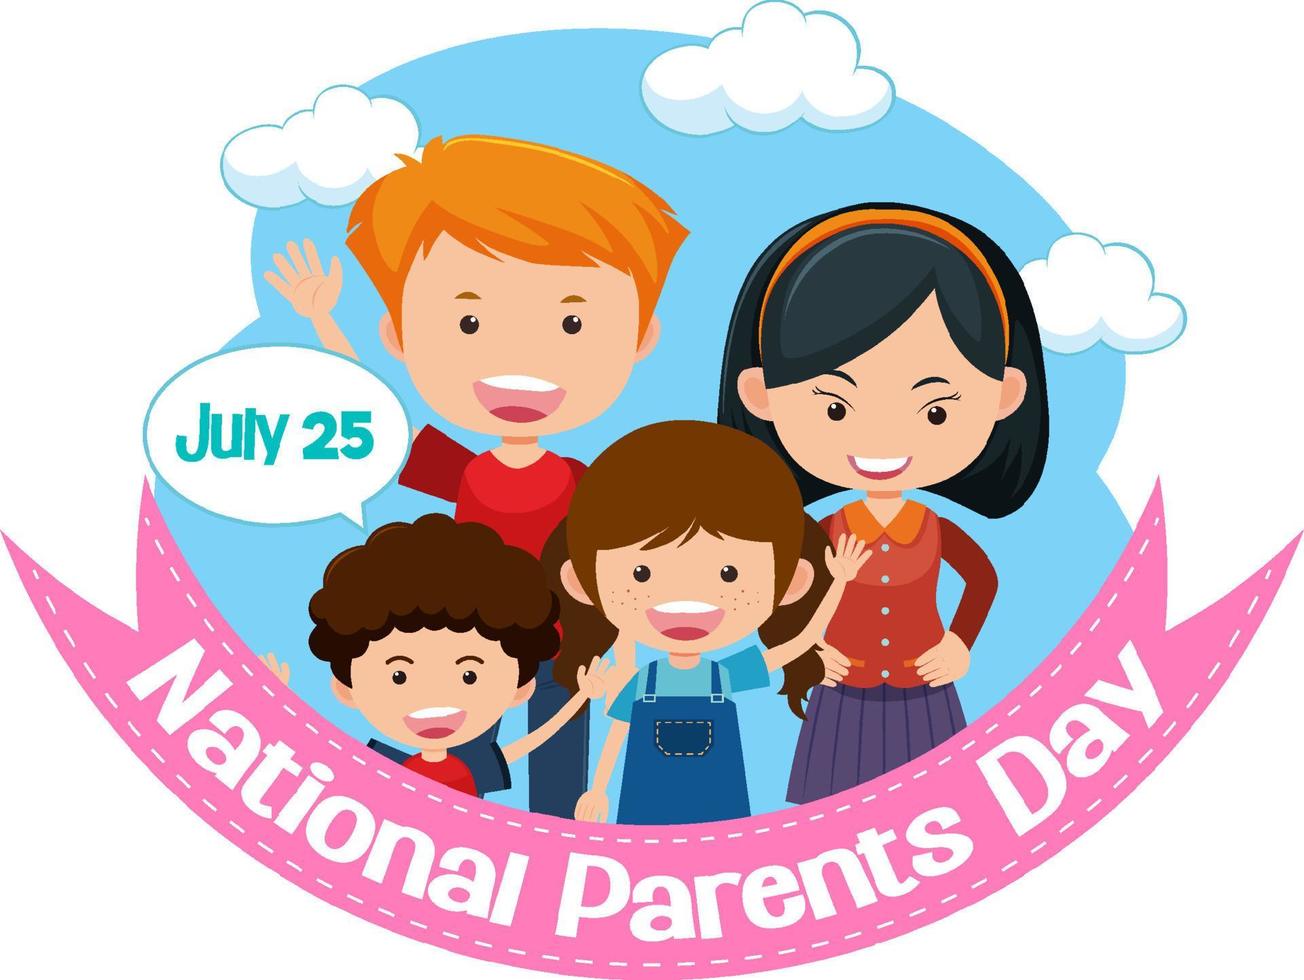 plantilla de póster del día nacional de los padres vector